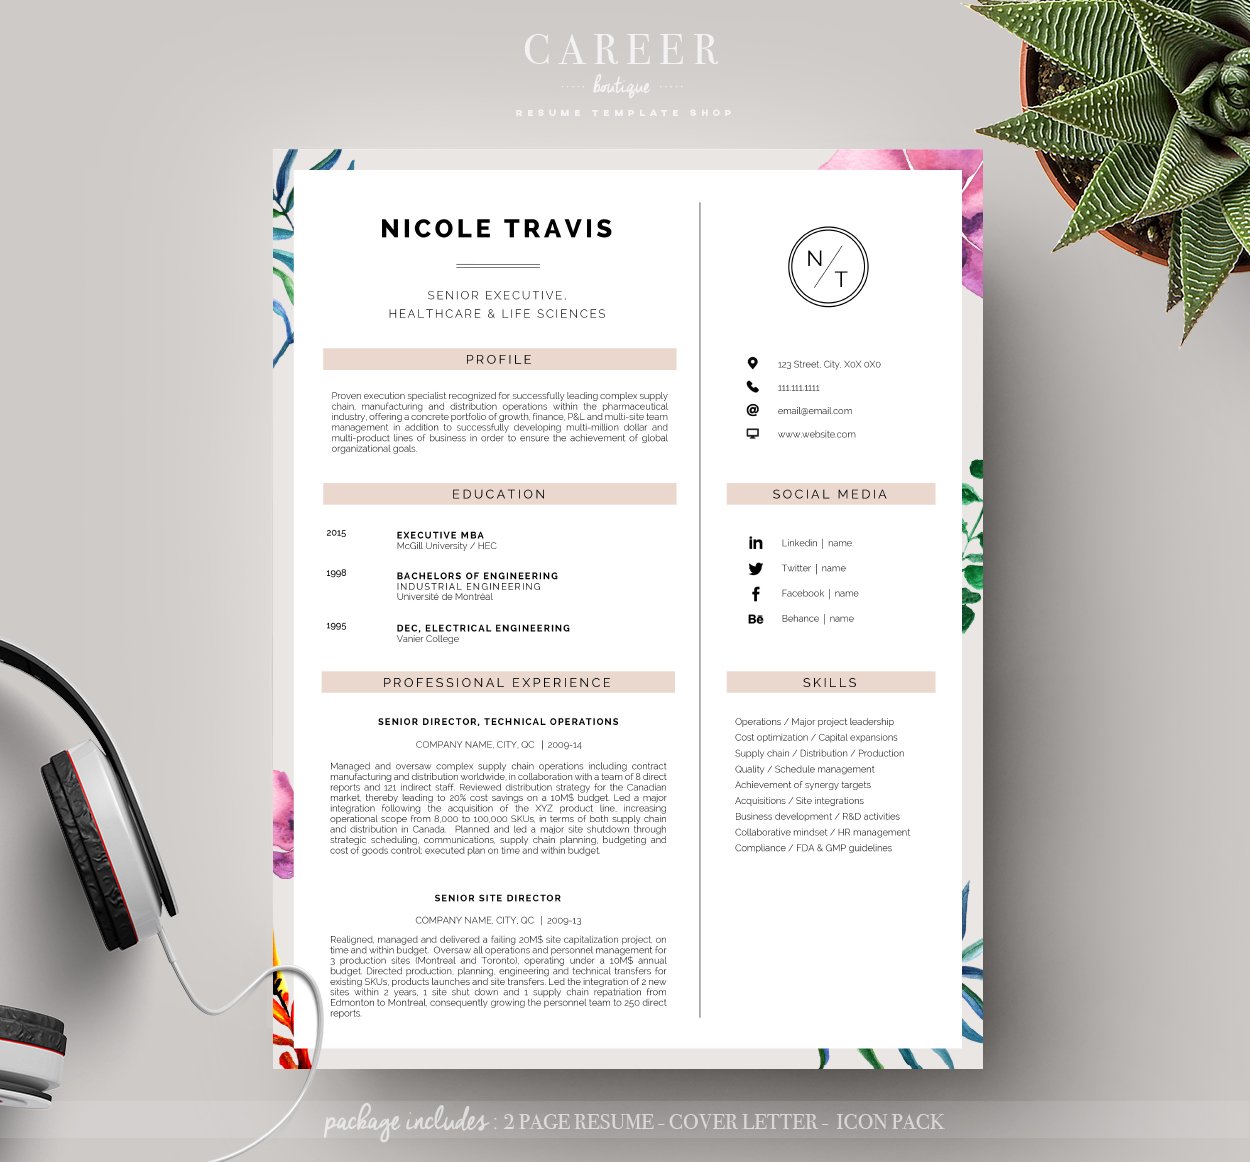 Modern Resume & CoverLetter Template cover image.